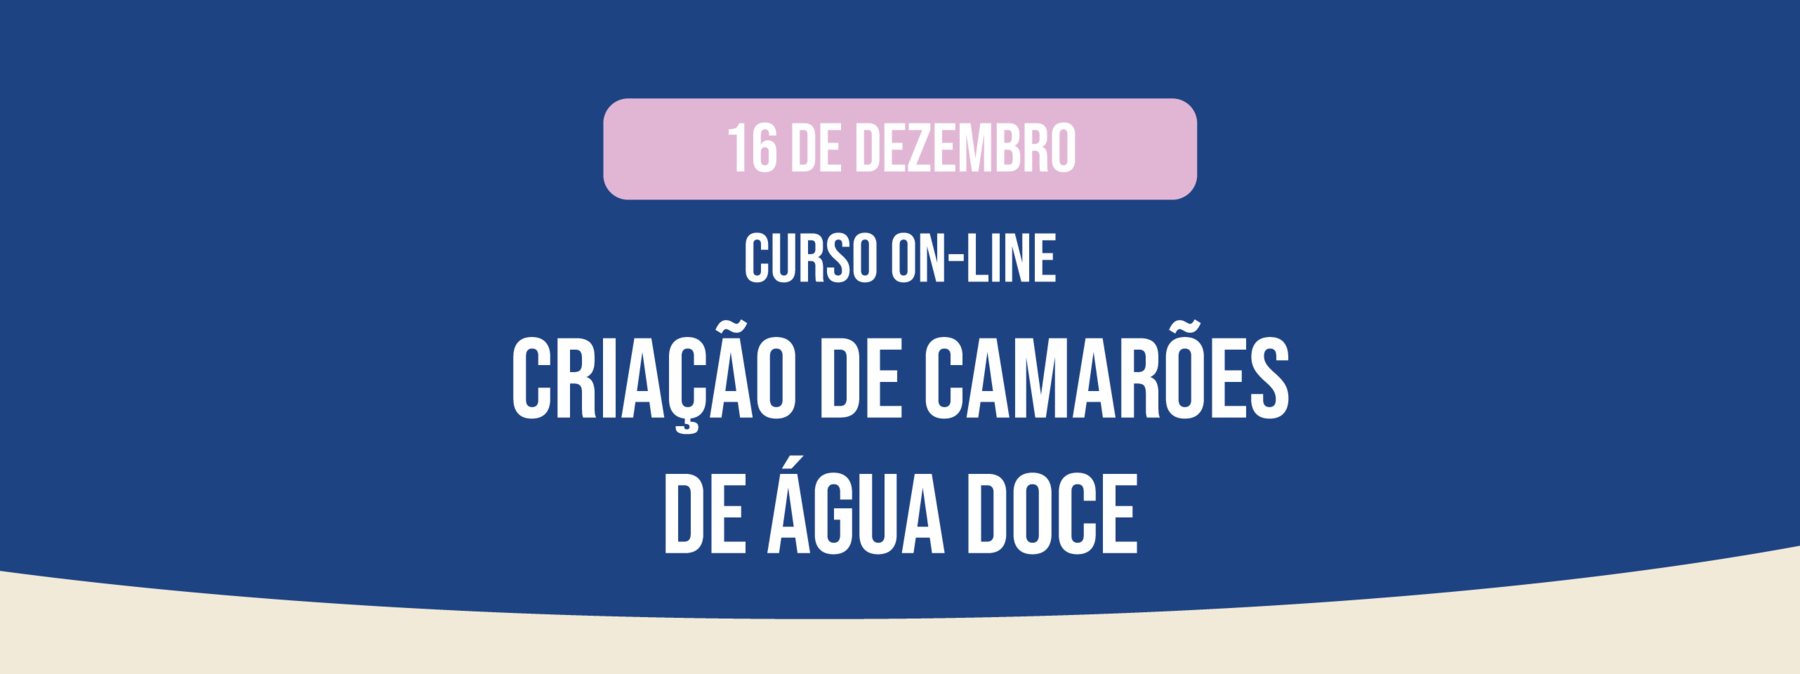 CURSO ON-LINE: CRIAÇÃO DE CAMARÕES DE ÁGUA DOCE